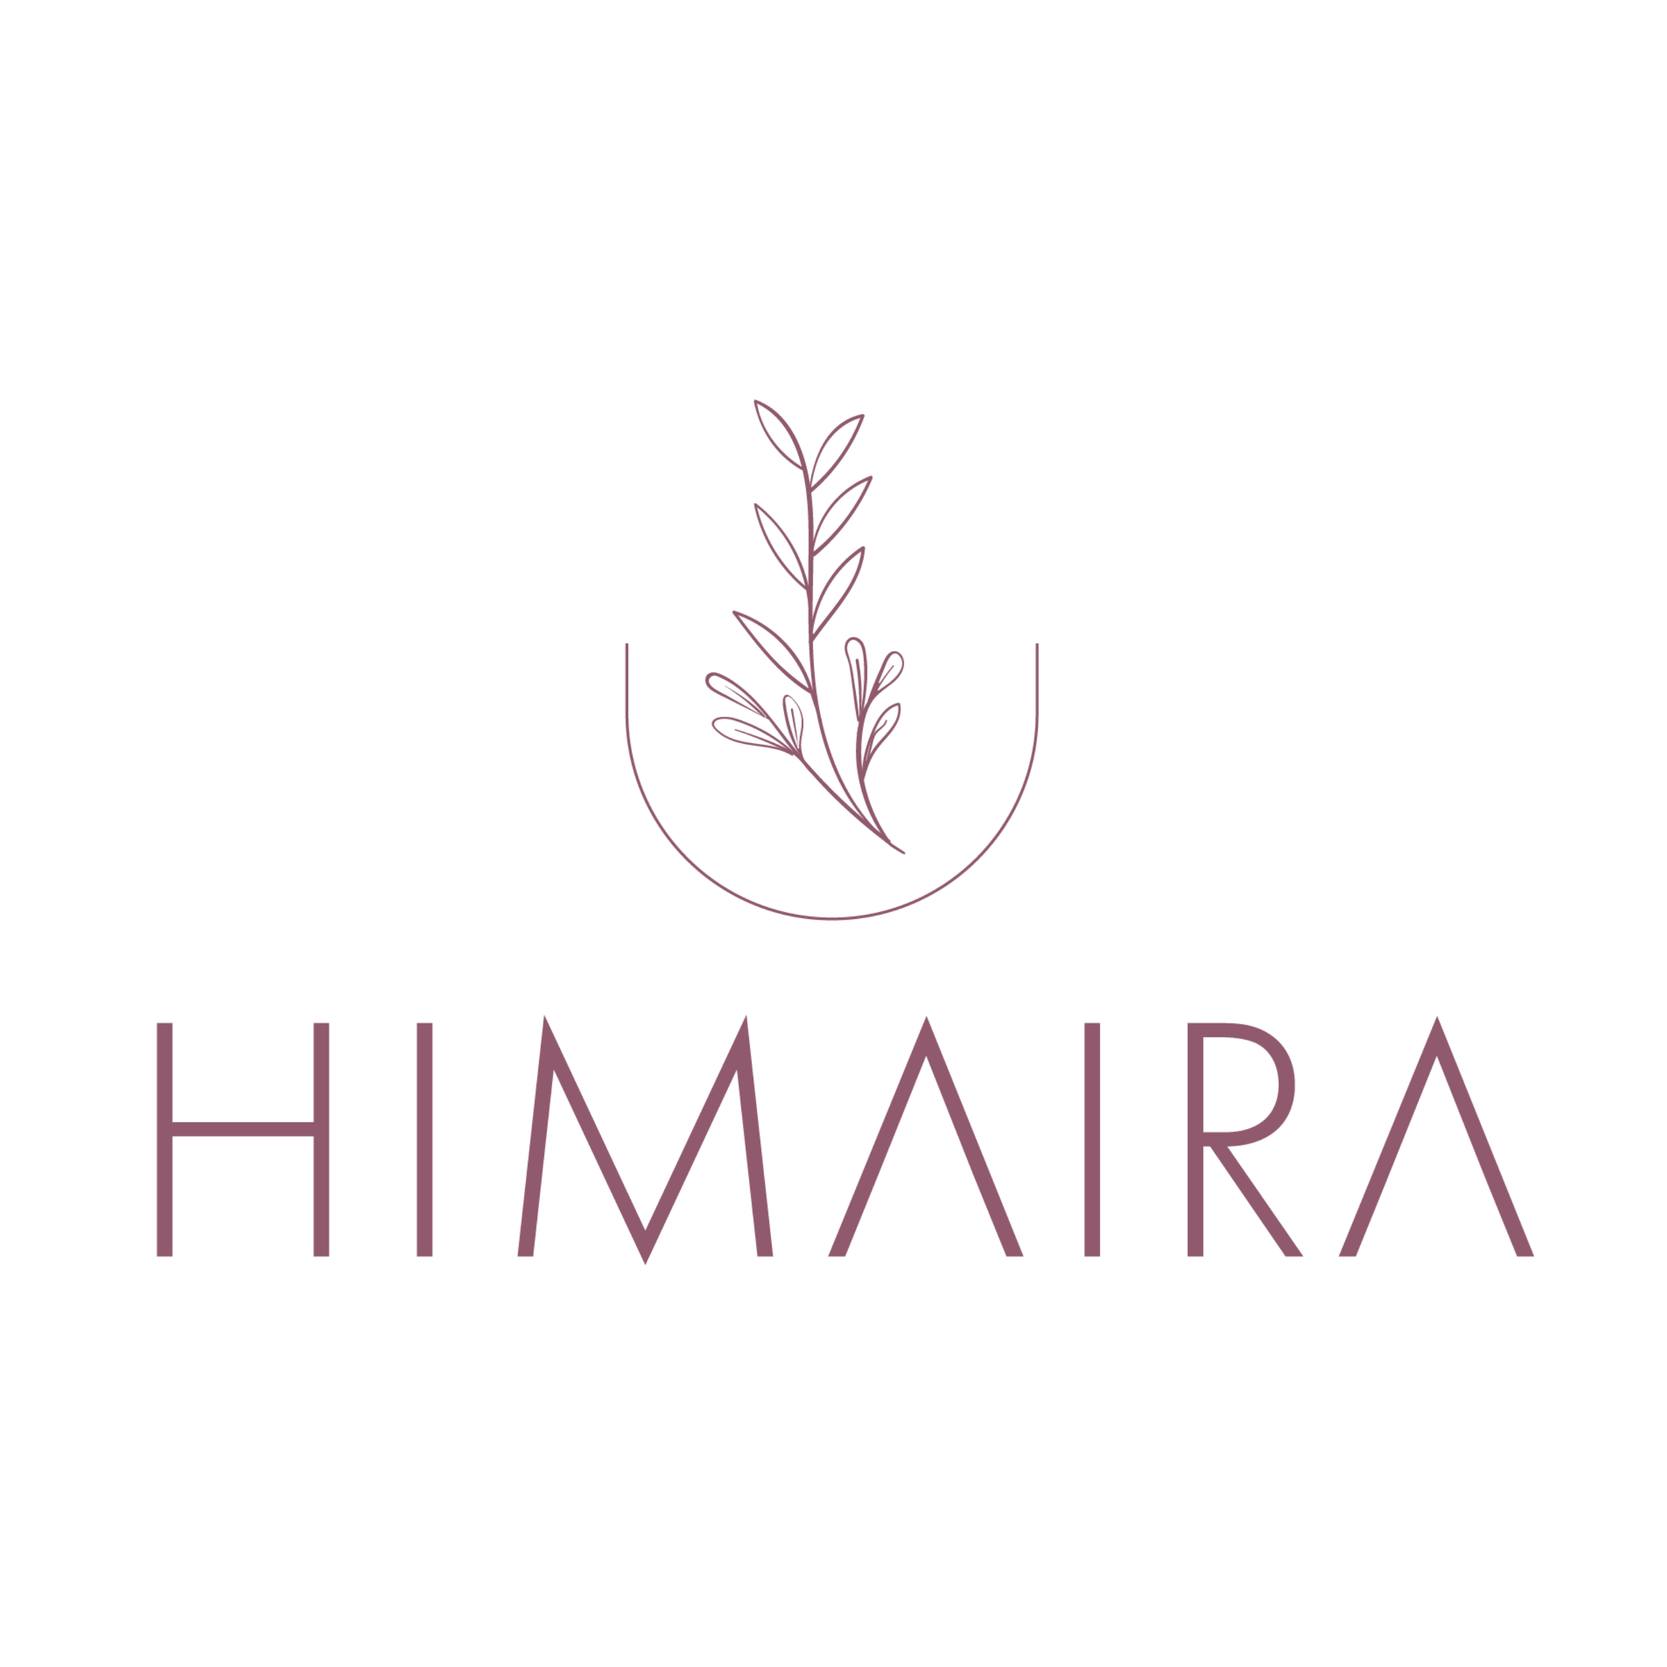  Himaira